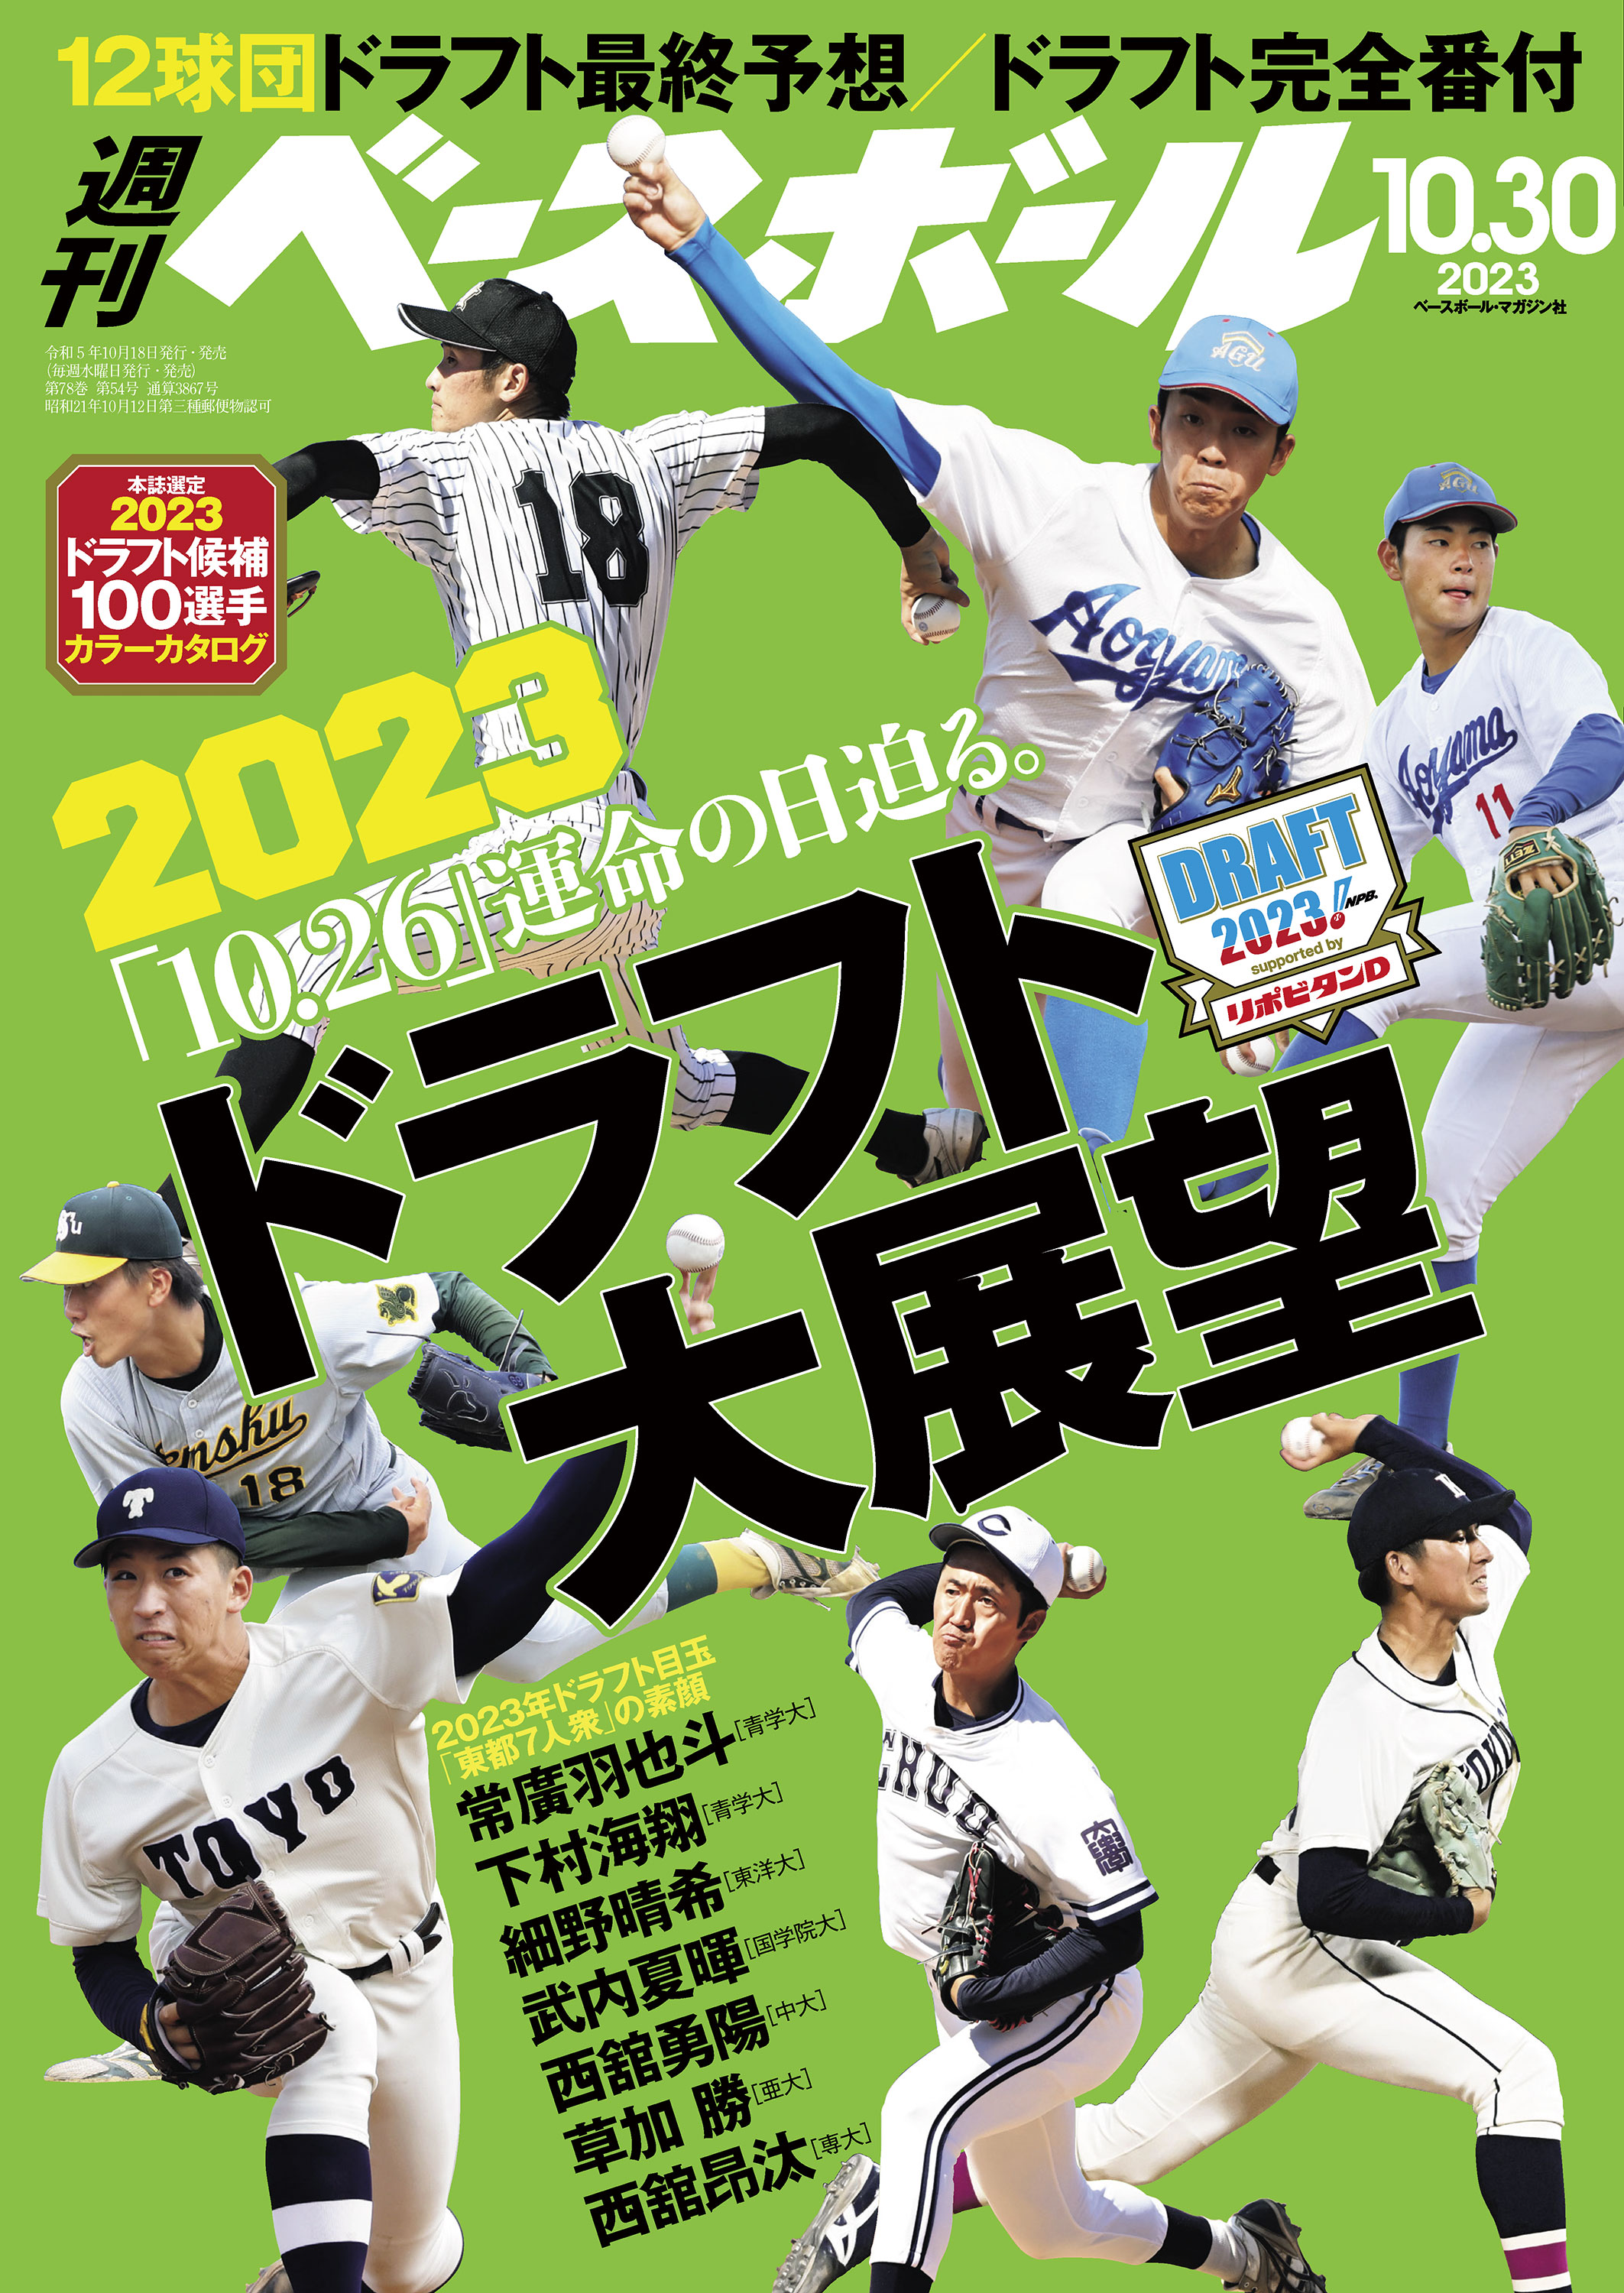 日本シリーズ 2007 ドラゴンズ 日本一の軌跡 DVD 野球 優勝 - その他